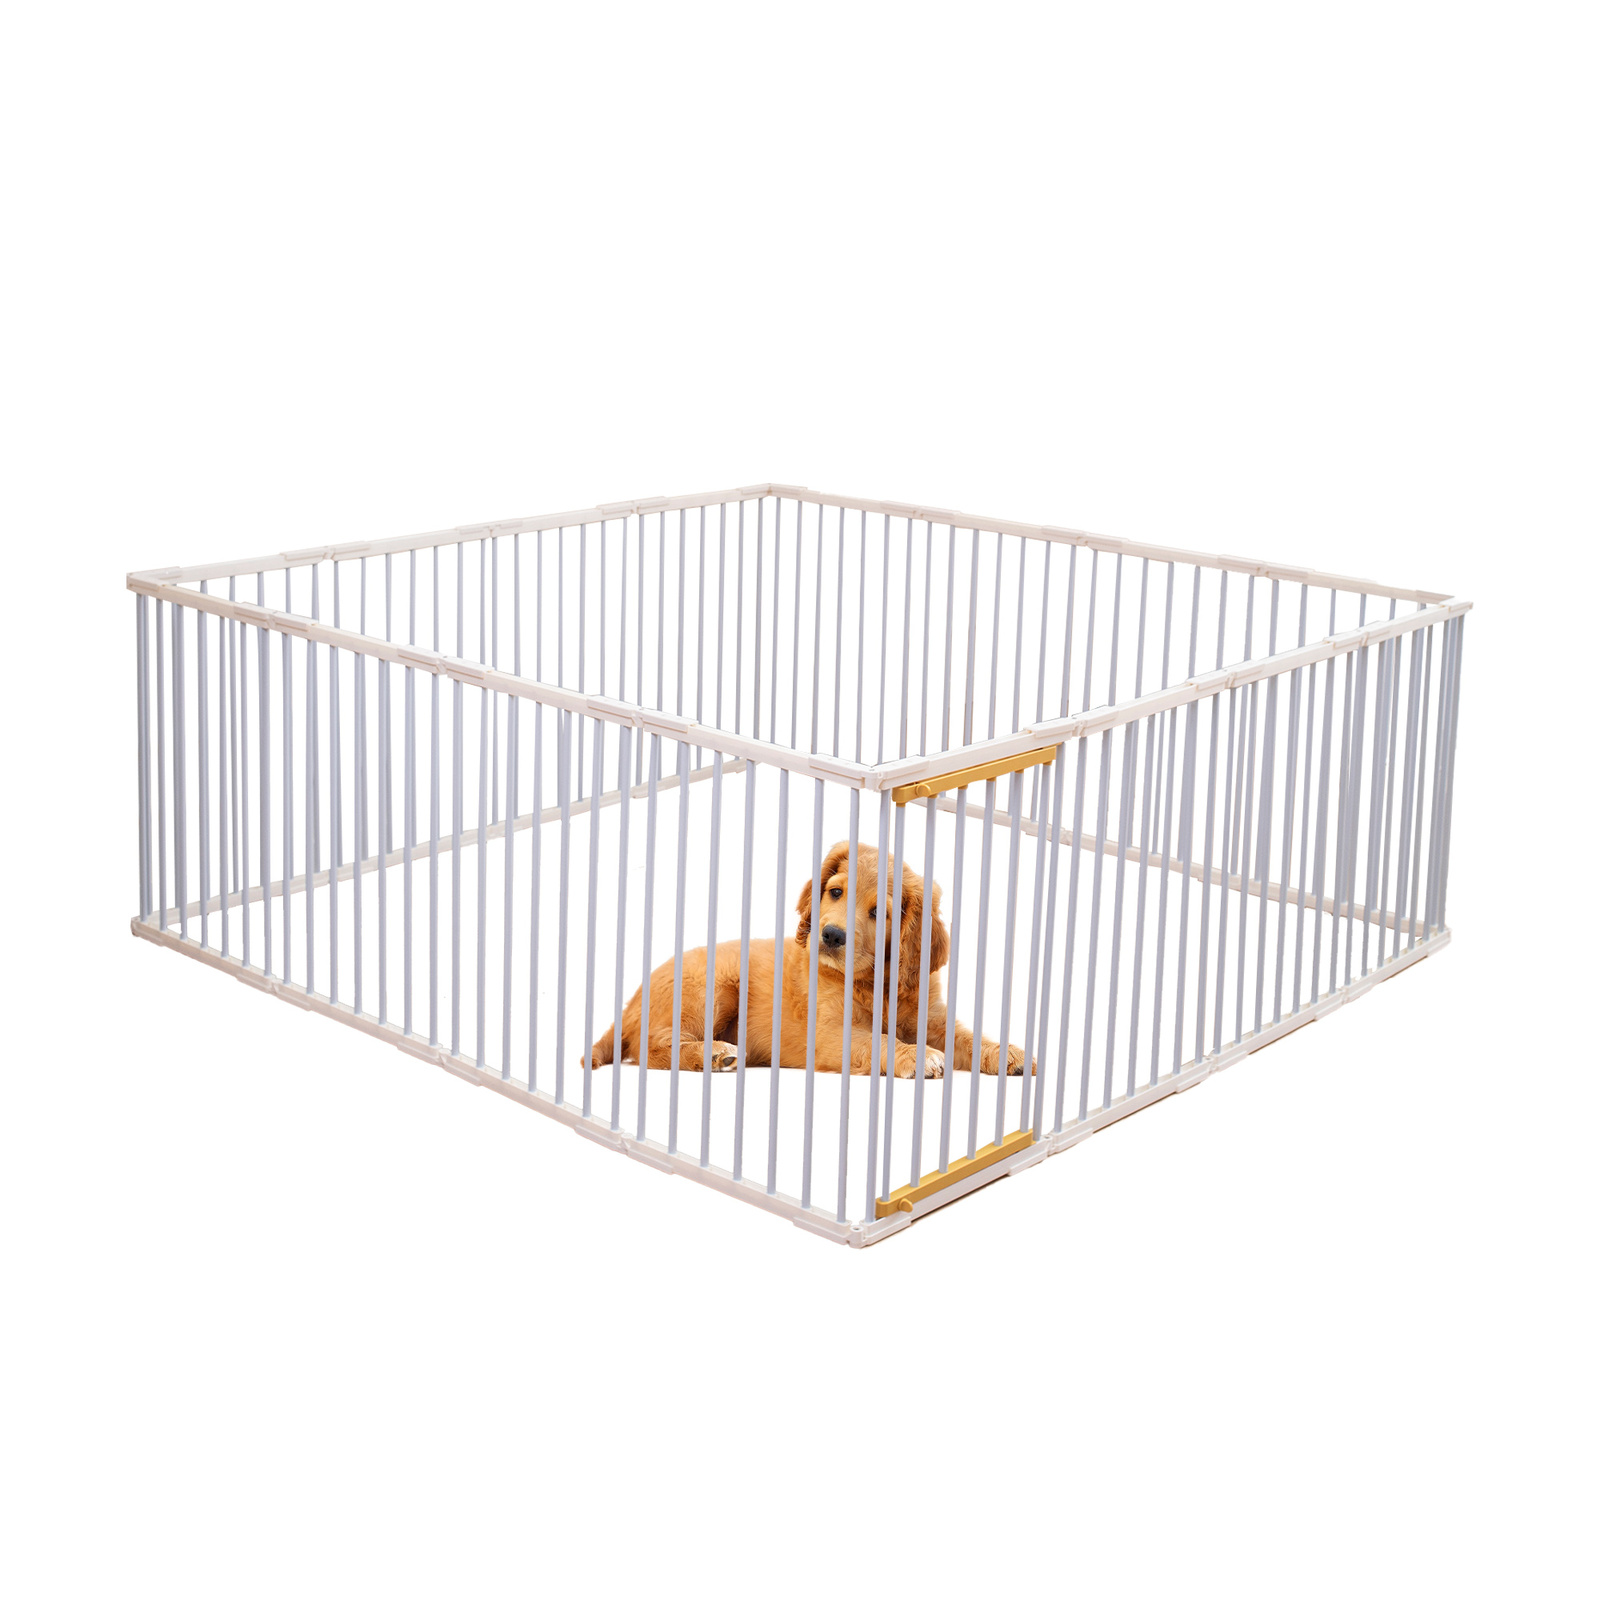 Portable Pet Dog Playpen Enclosure Cage 16 Panels